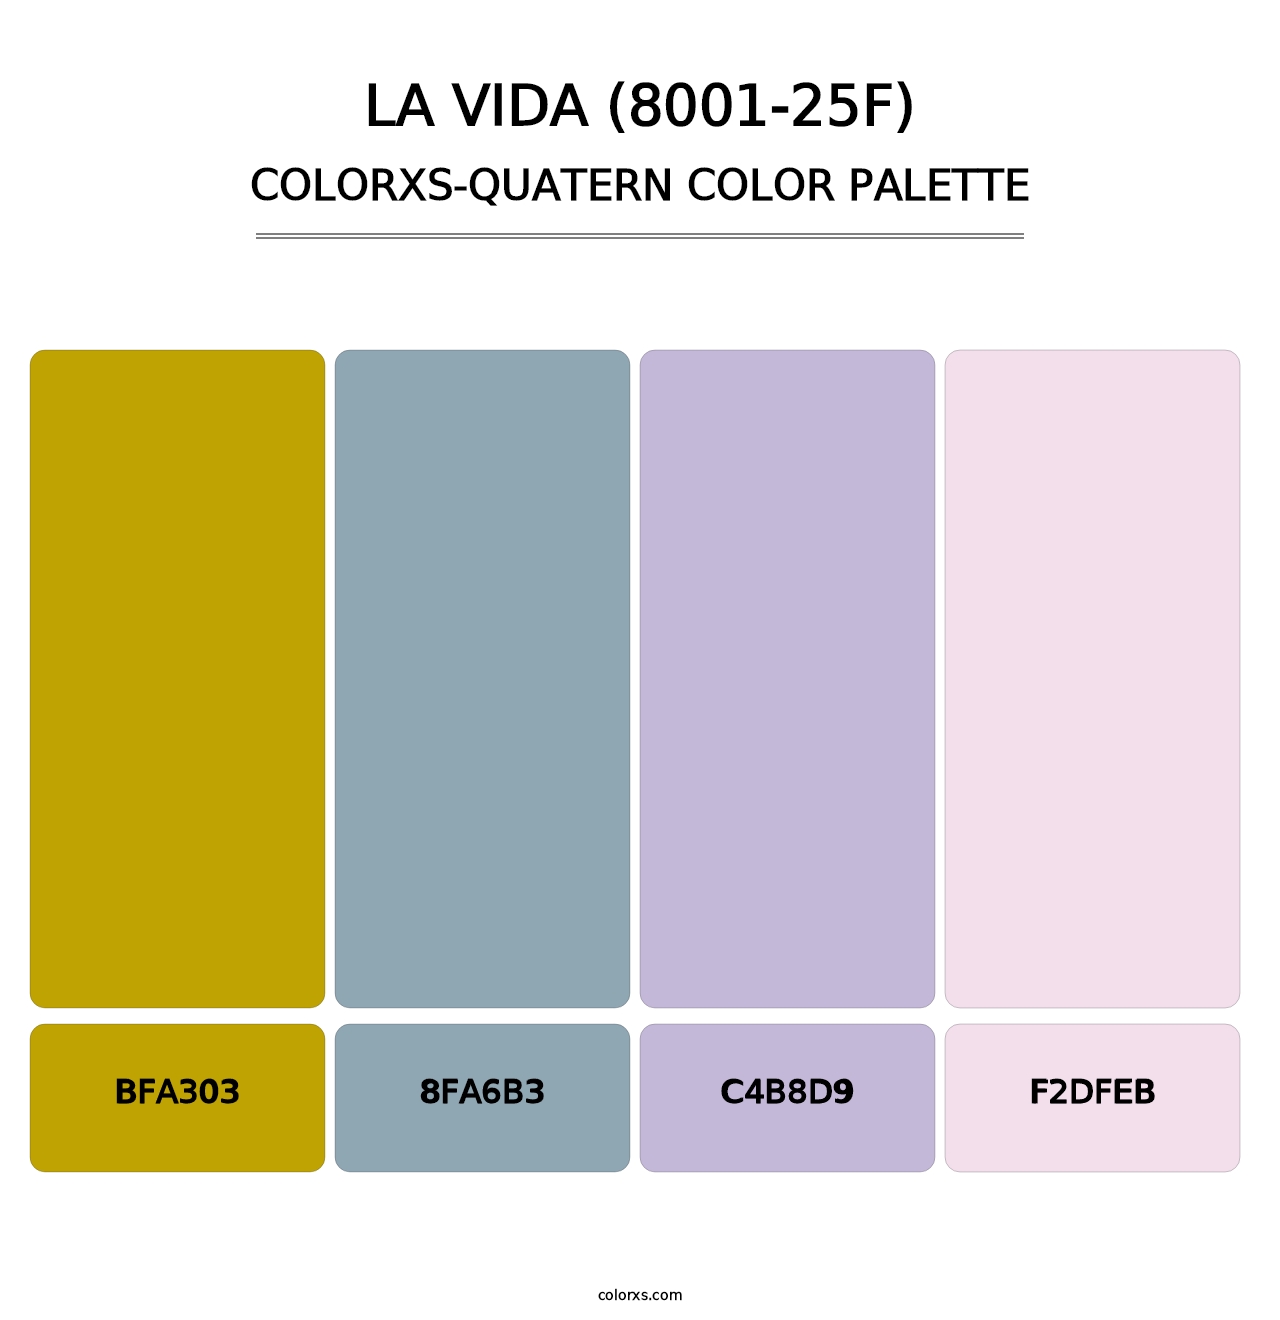 La Vida (8001-25F) - Colorxs Quatern Palette